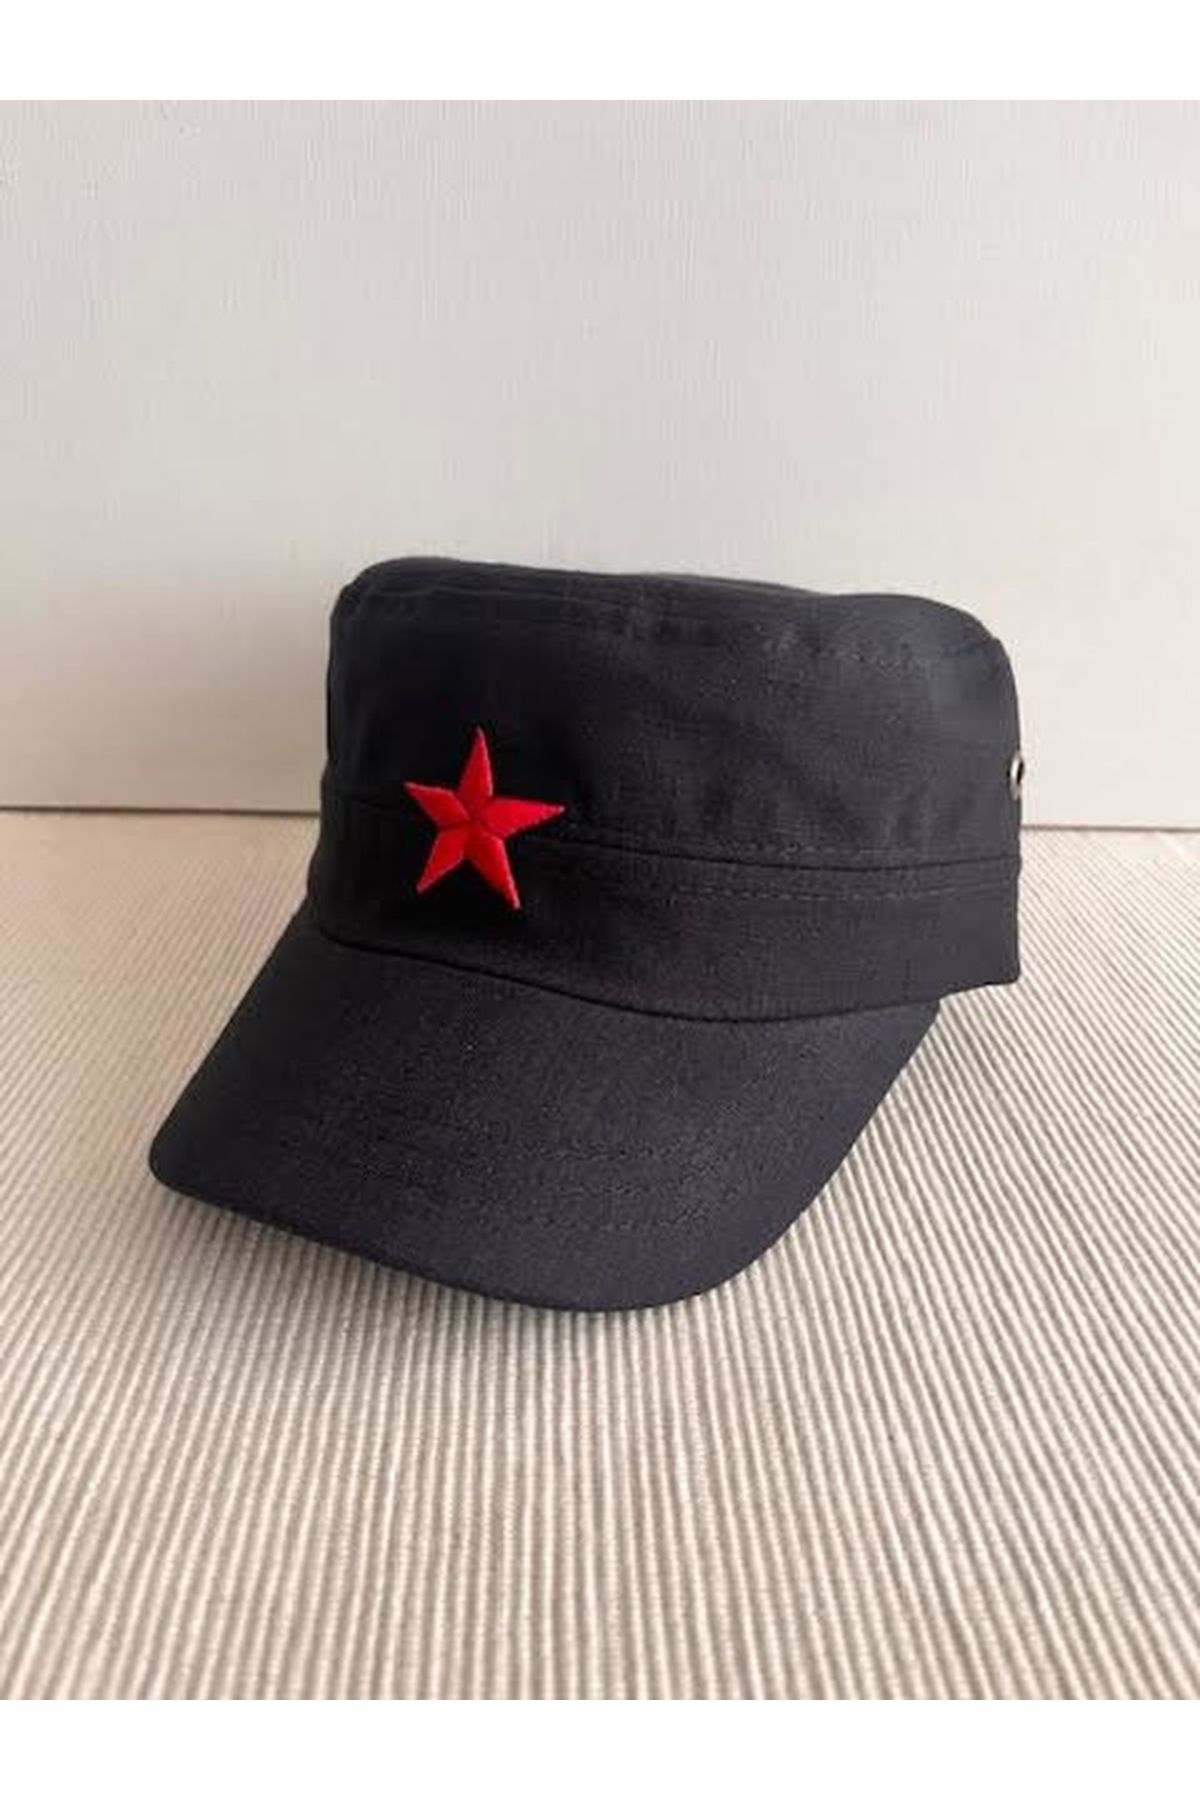 CosmoOutlet Fidel Castro Model Kızıl Yıldız Sembol Arkasından Ayarlanabilir Siyah Castro Şapka